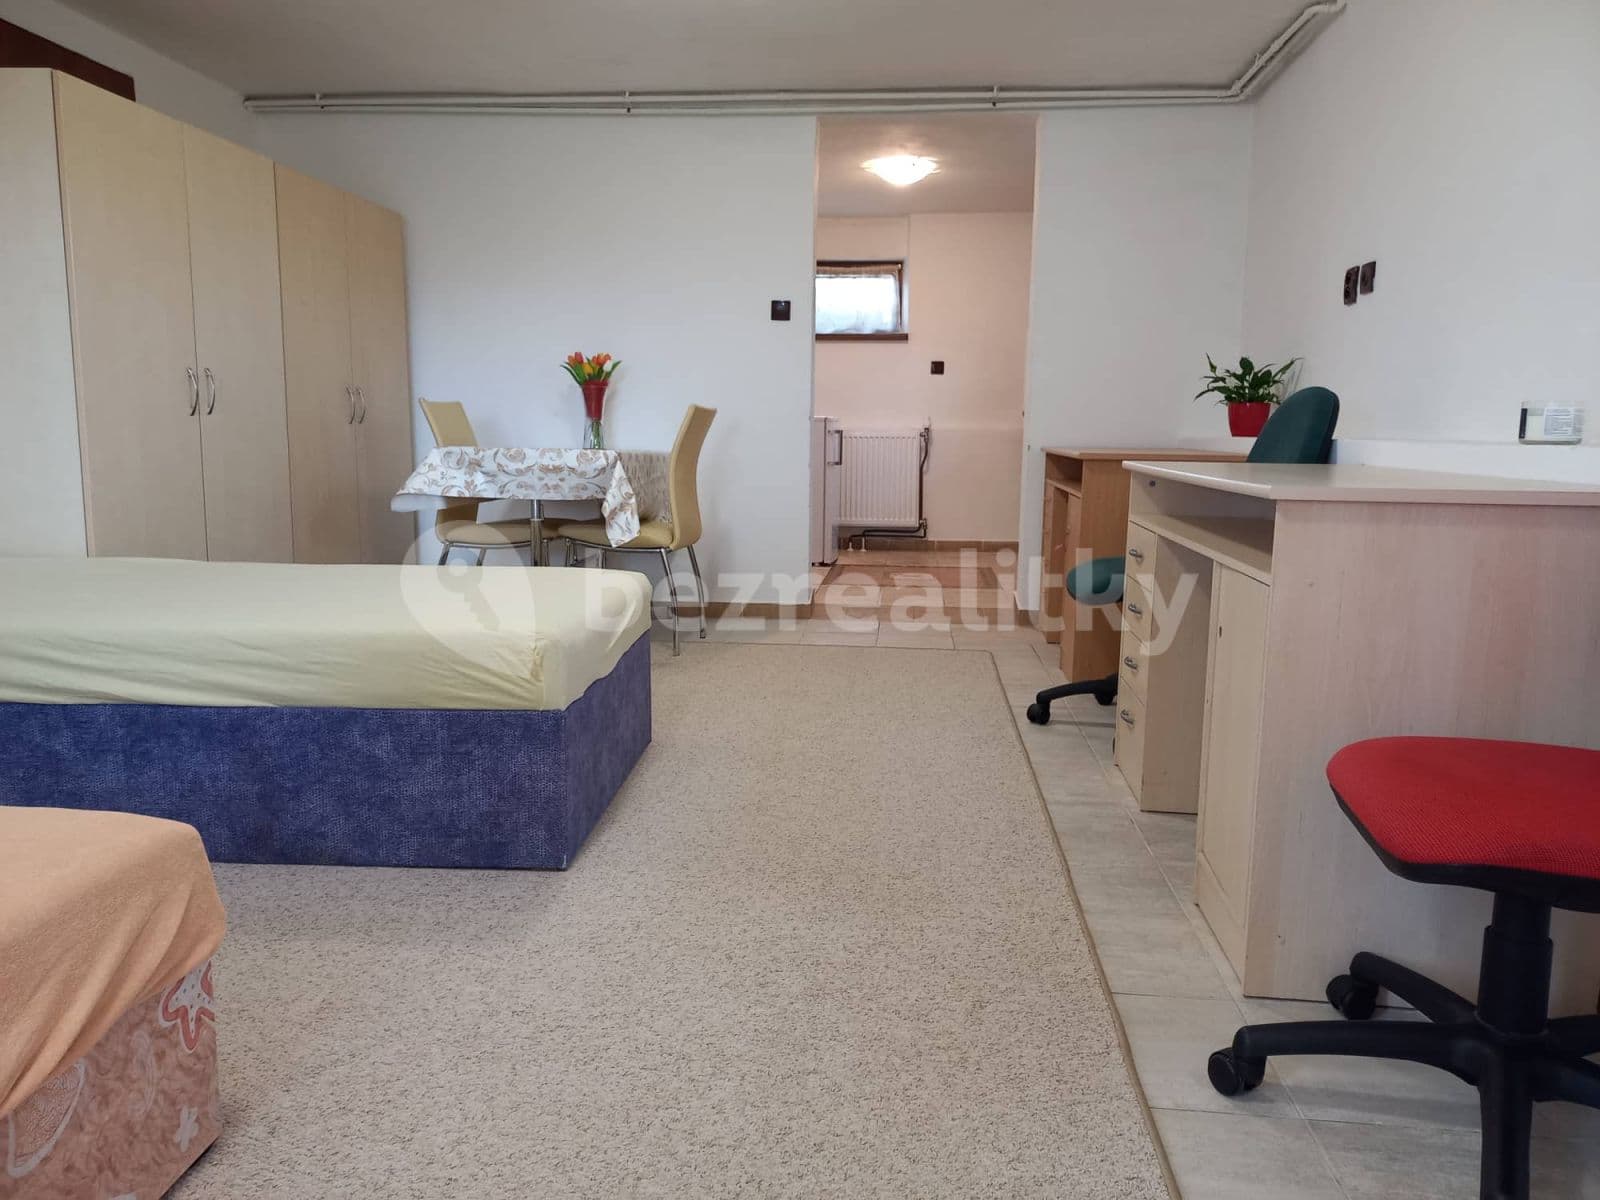 1 bedroom flat to rent, 40 m², Luční, Rudolfov, Jihočeský Region